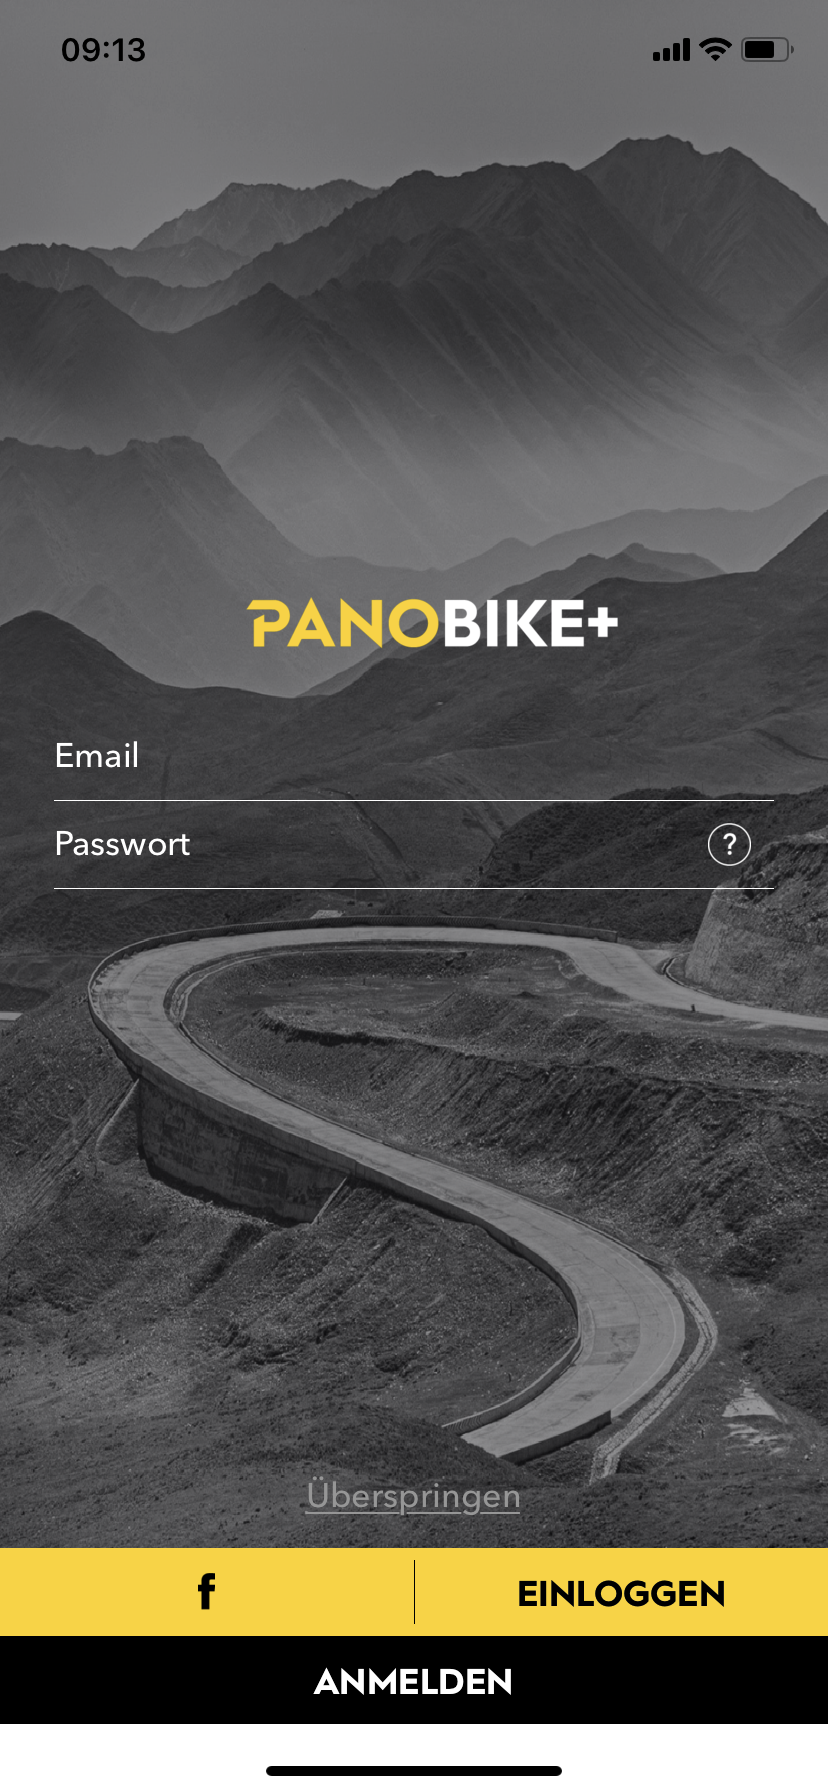 App-Panobike+1